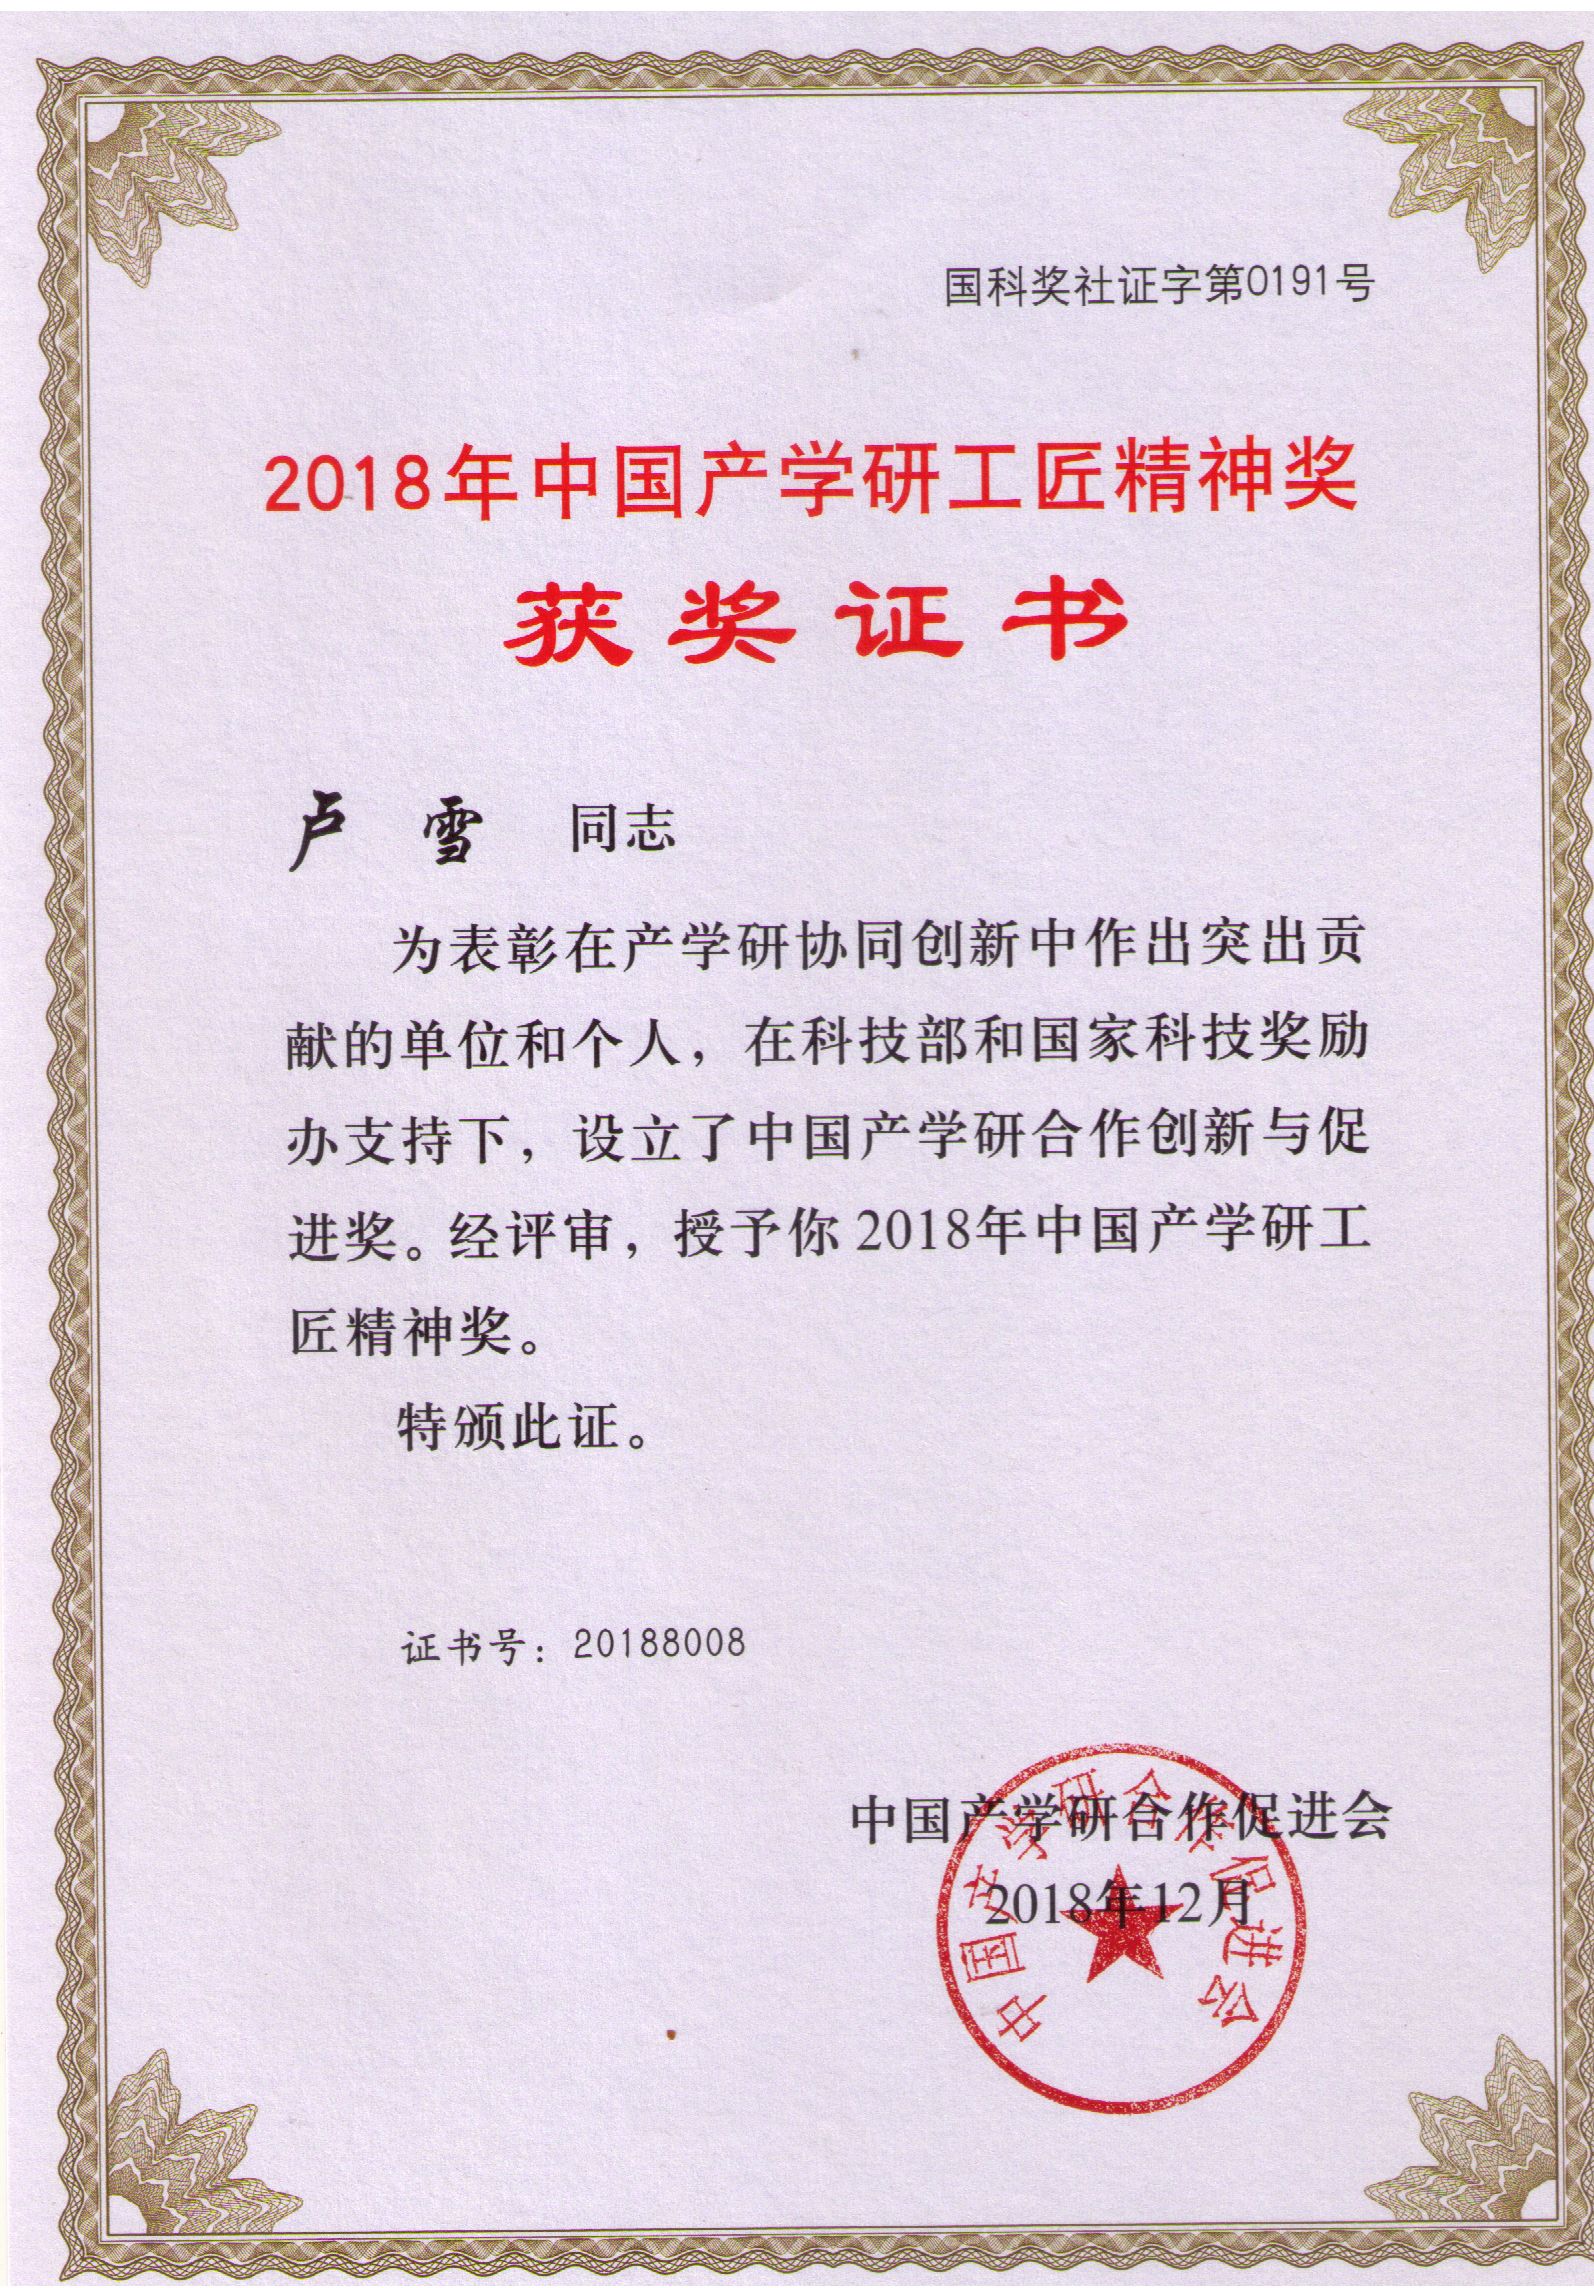 2018年度中国产学研精神奖